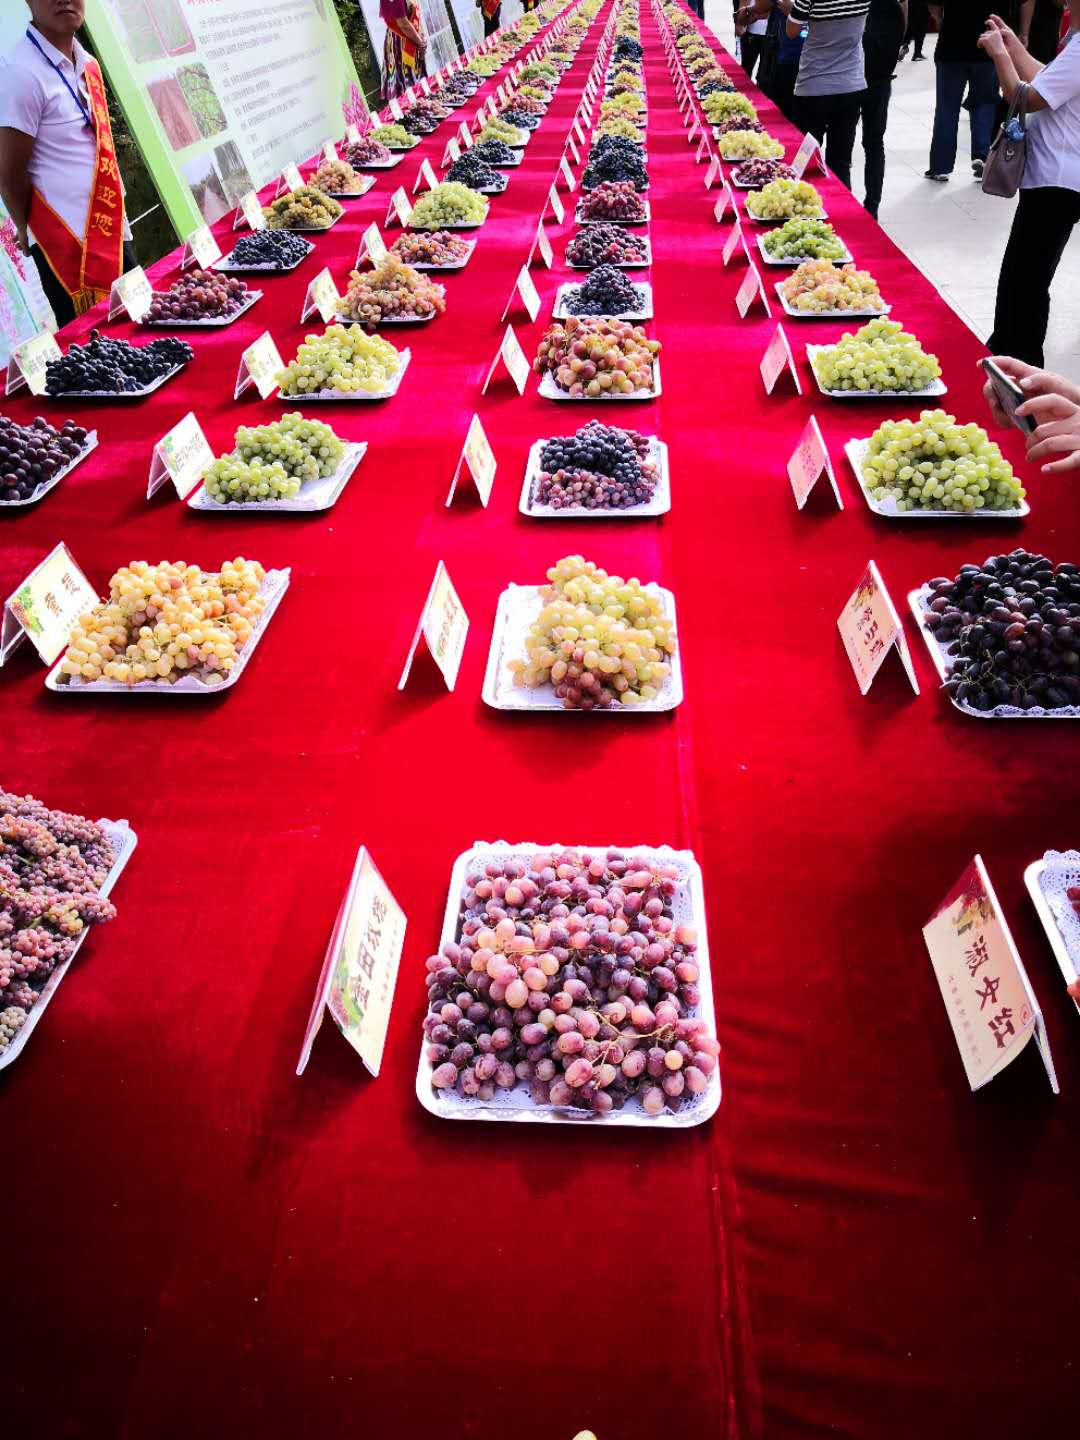 La fête des raisins revient à Tourfan